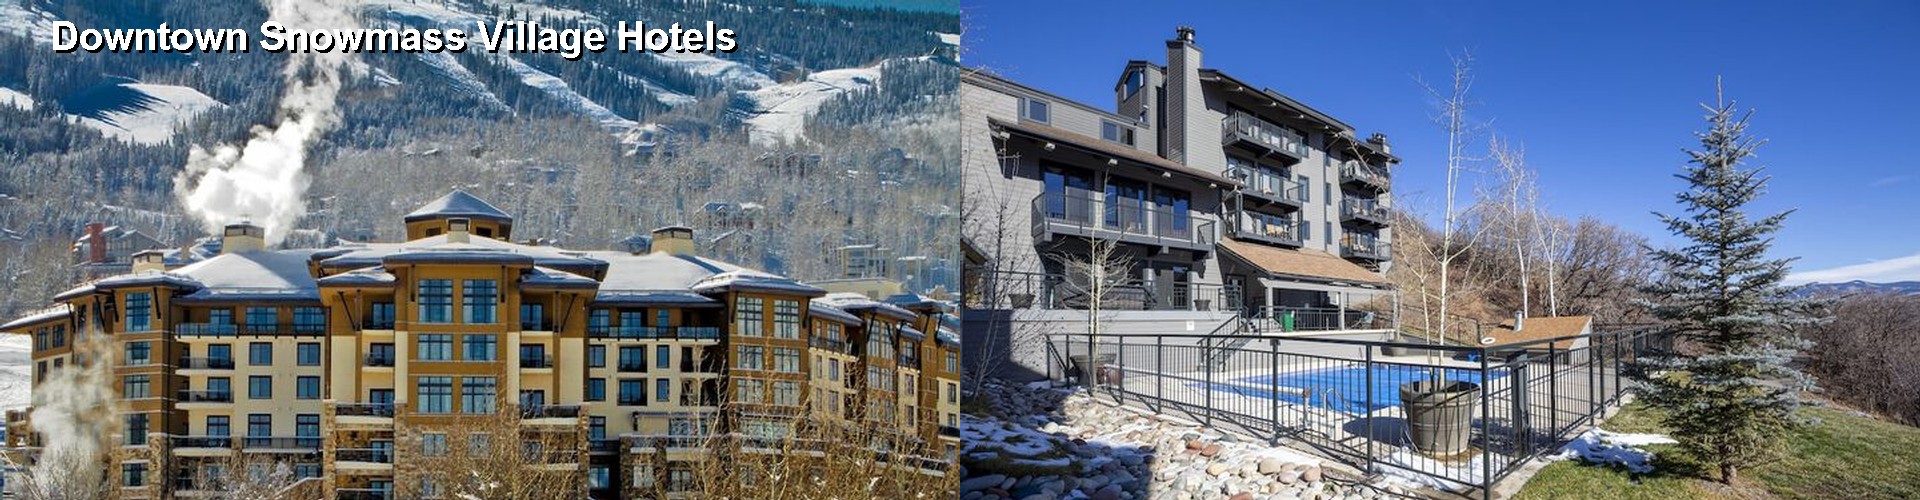 5 Best Hotels near Downtown Snowmass Village